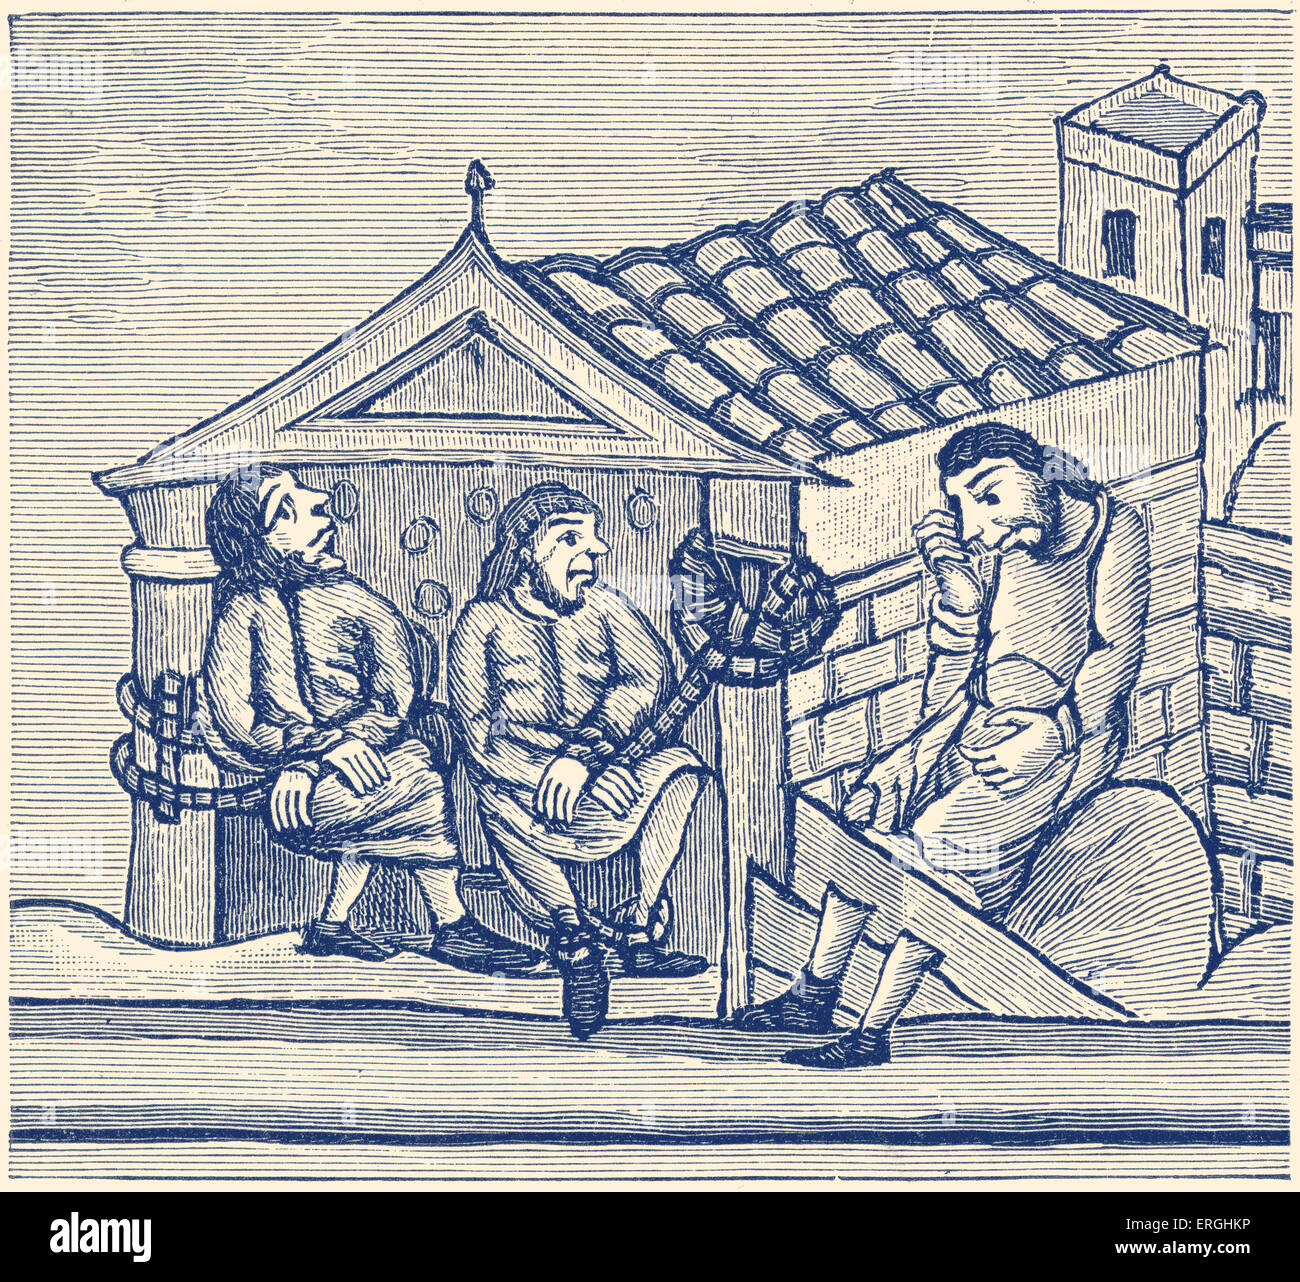 Gli uomini in carcere e delle scorte. Xii secolo inglese illustrazione A.D (1130 - 1174). Foto Stock